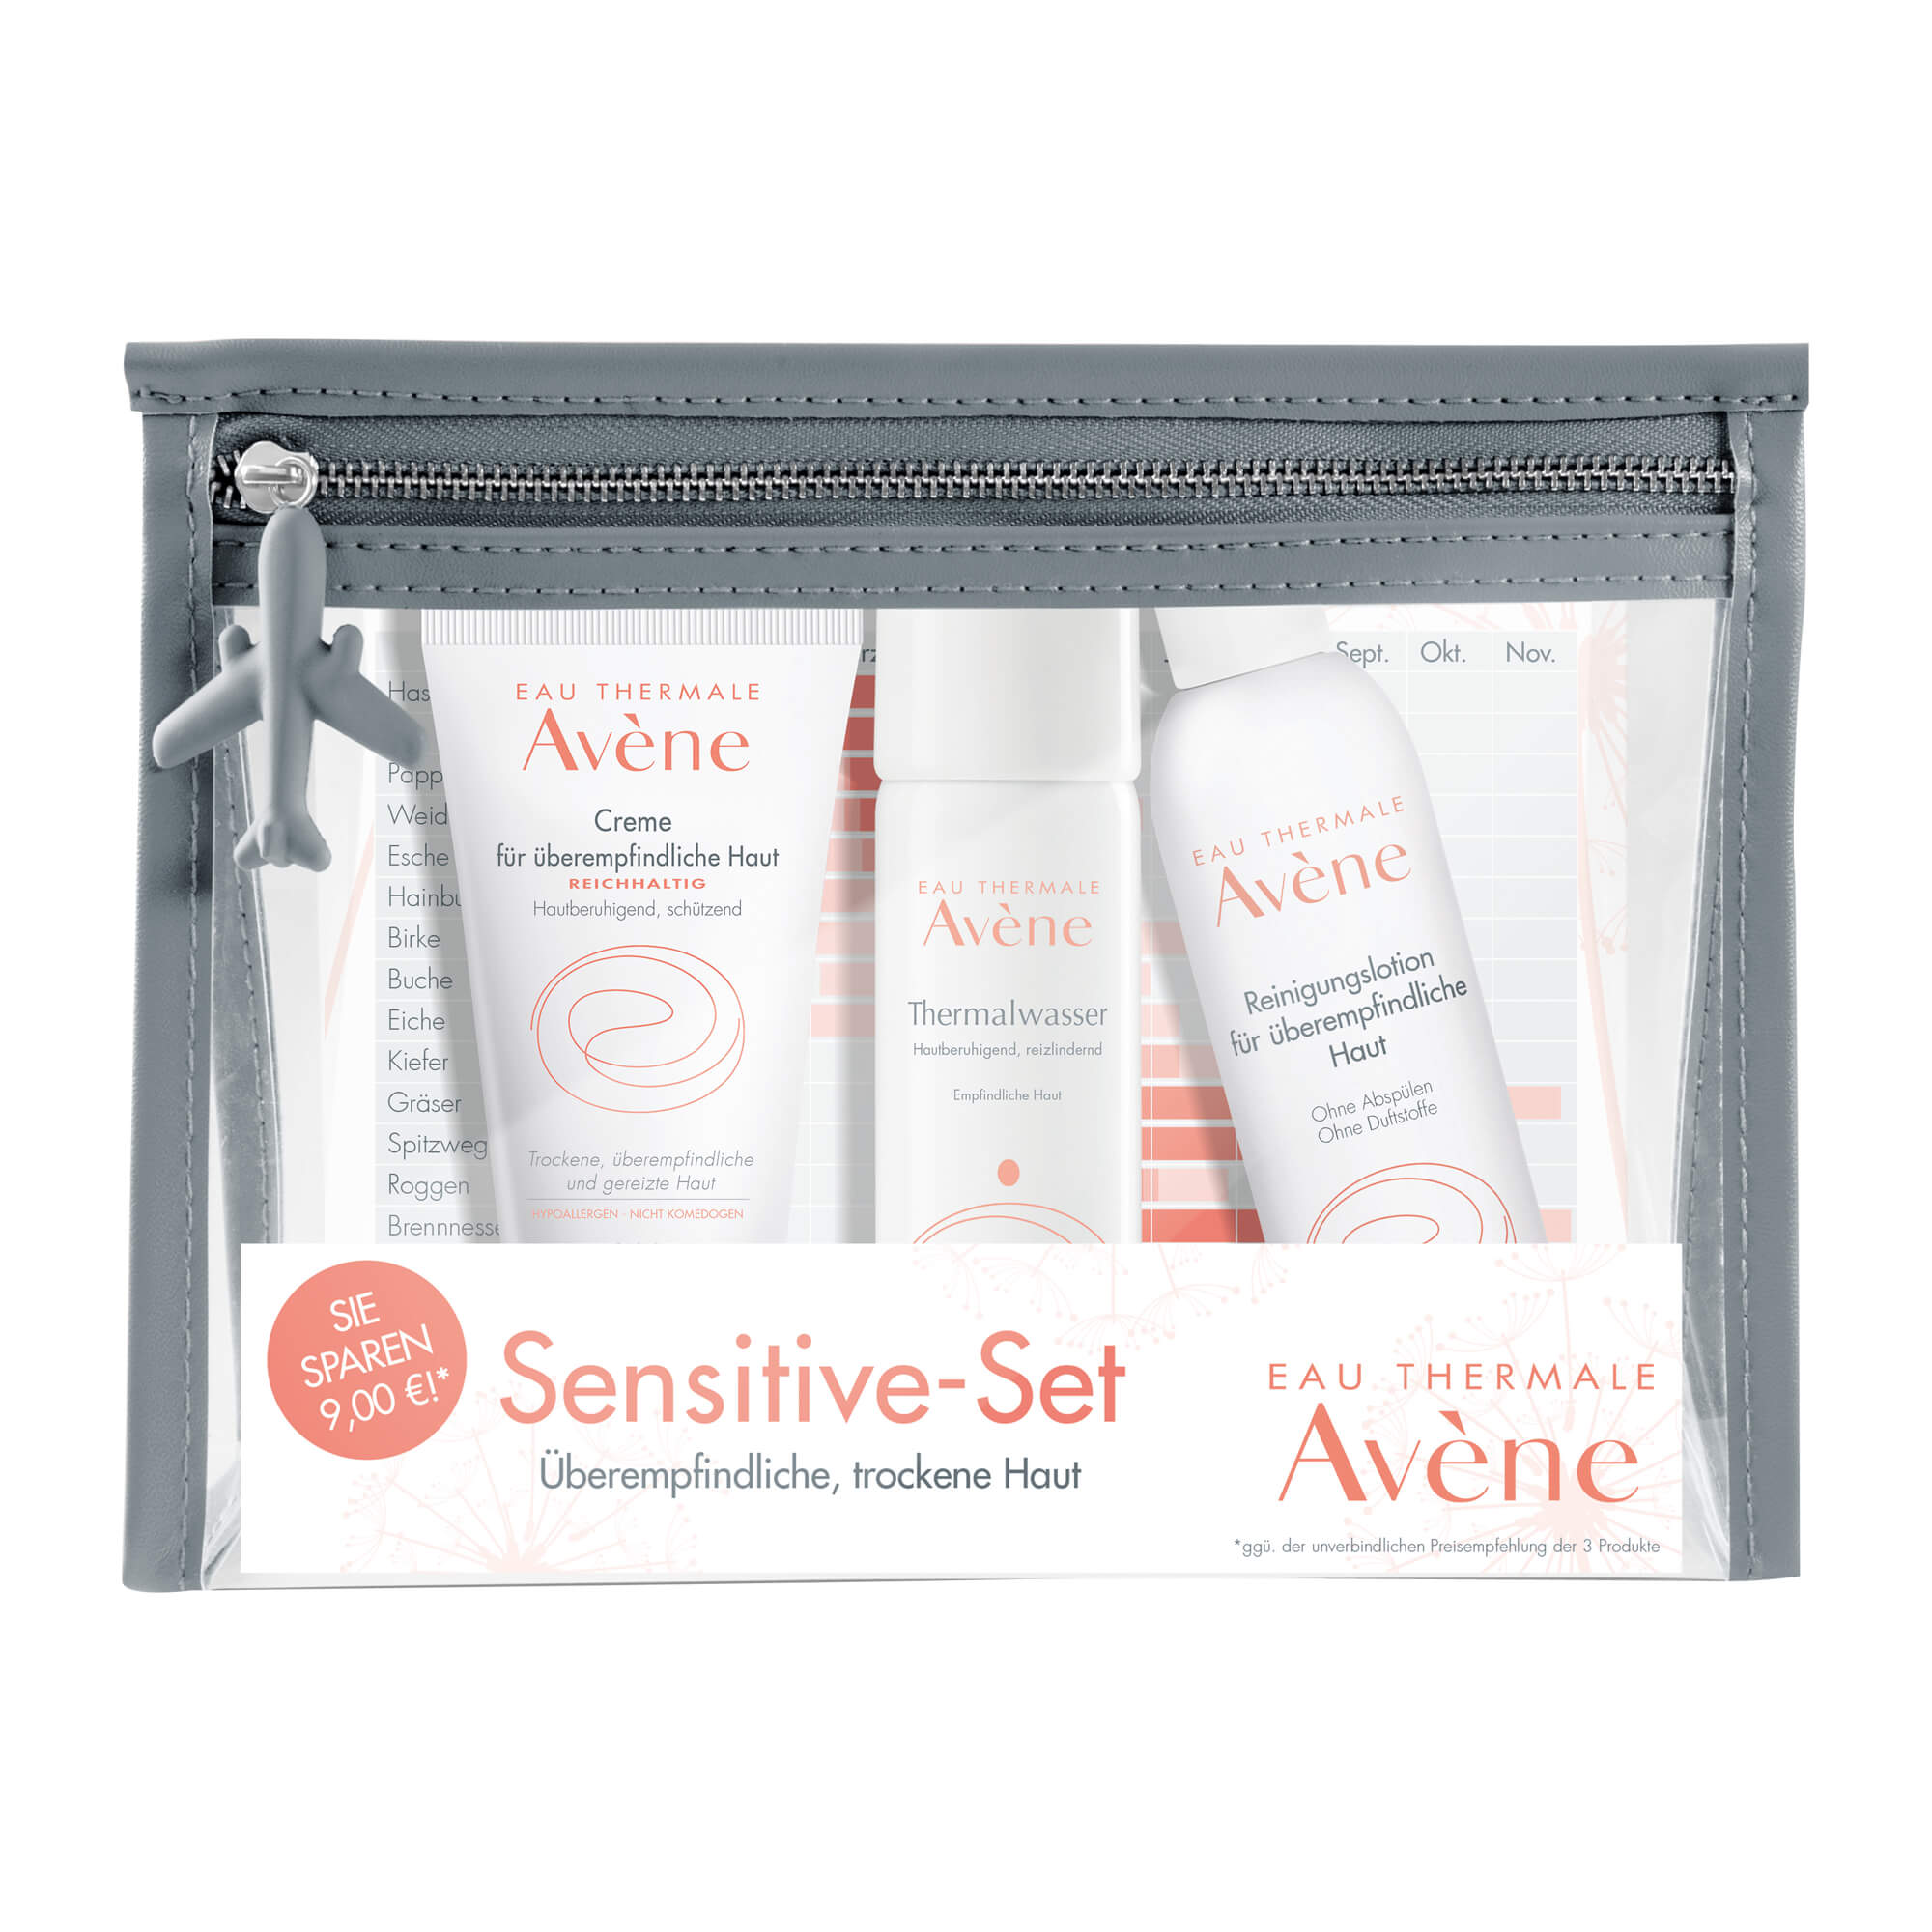 Sensitive-Set für überempfindliche und trockene Haut.